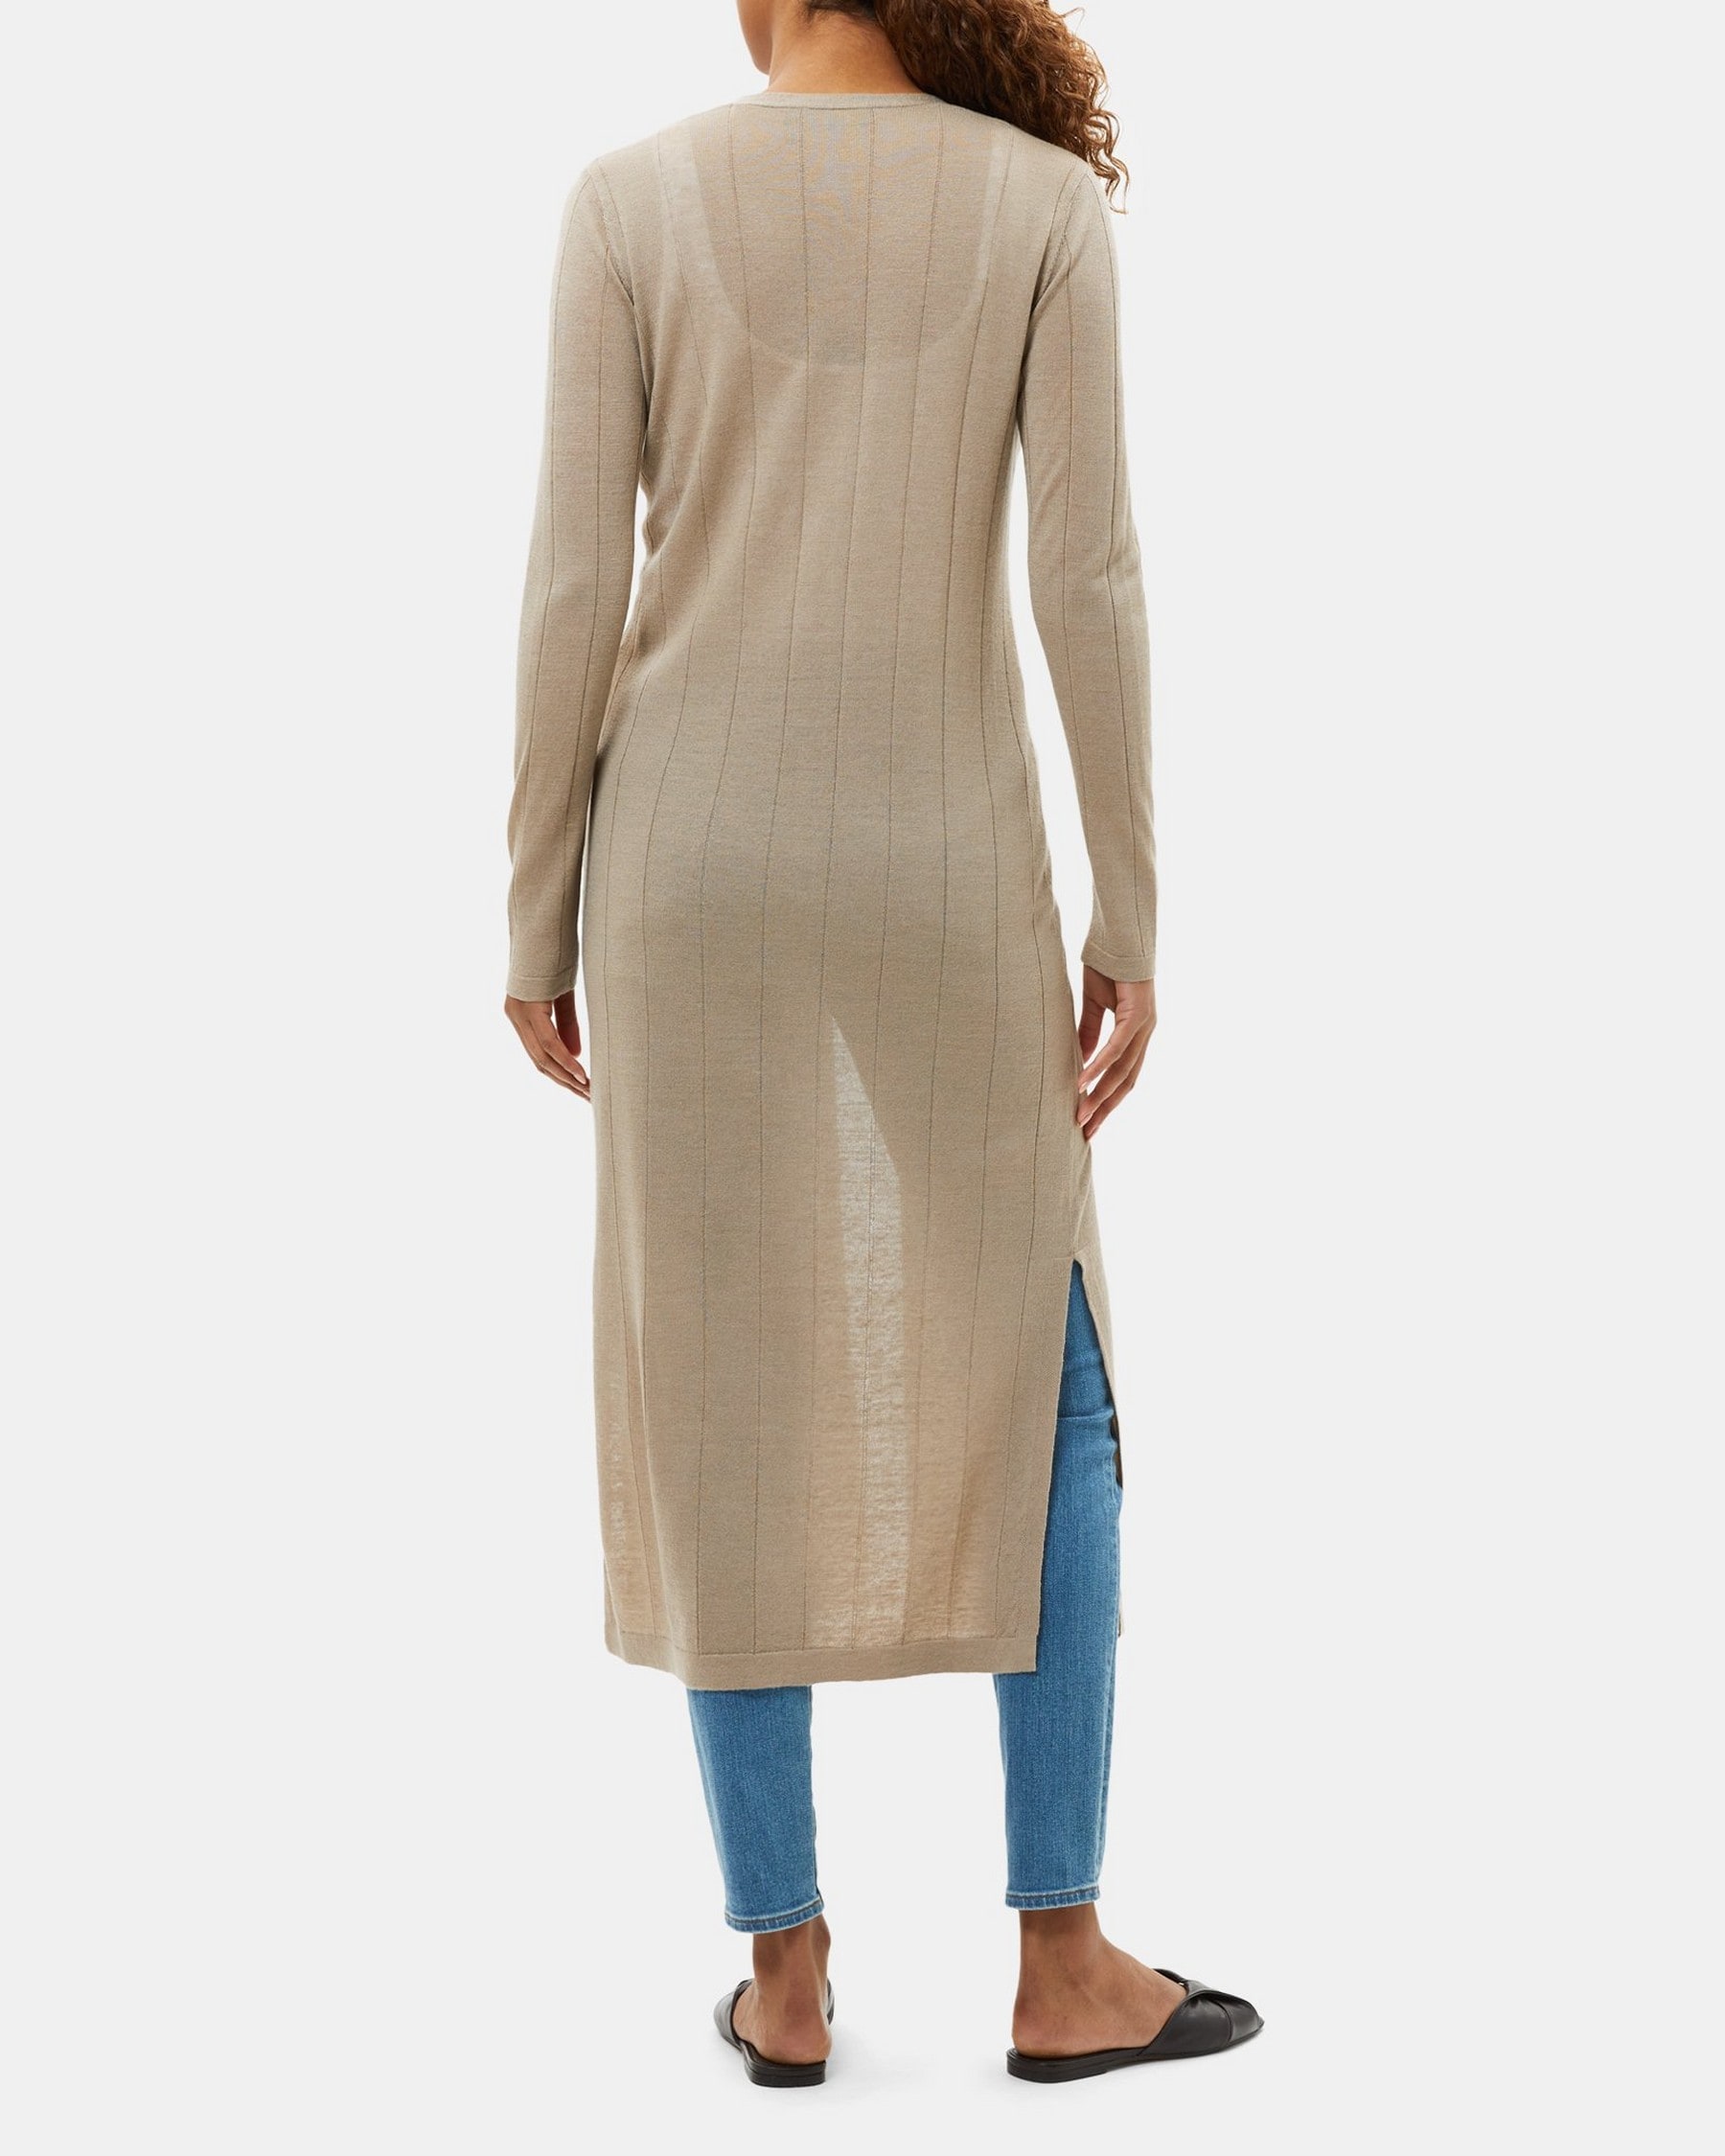 Cardigan Dress in Wool-Linen